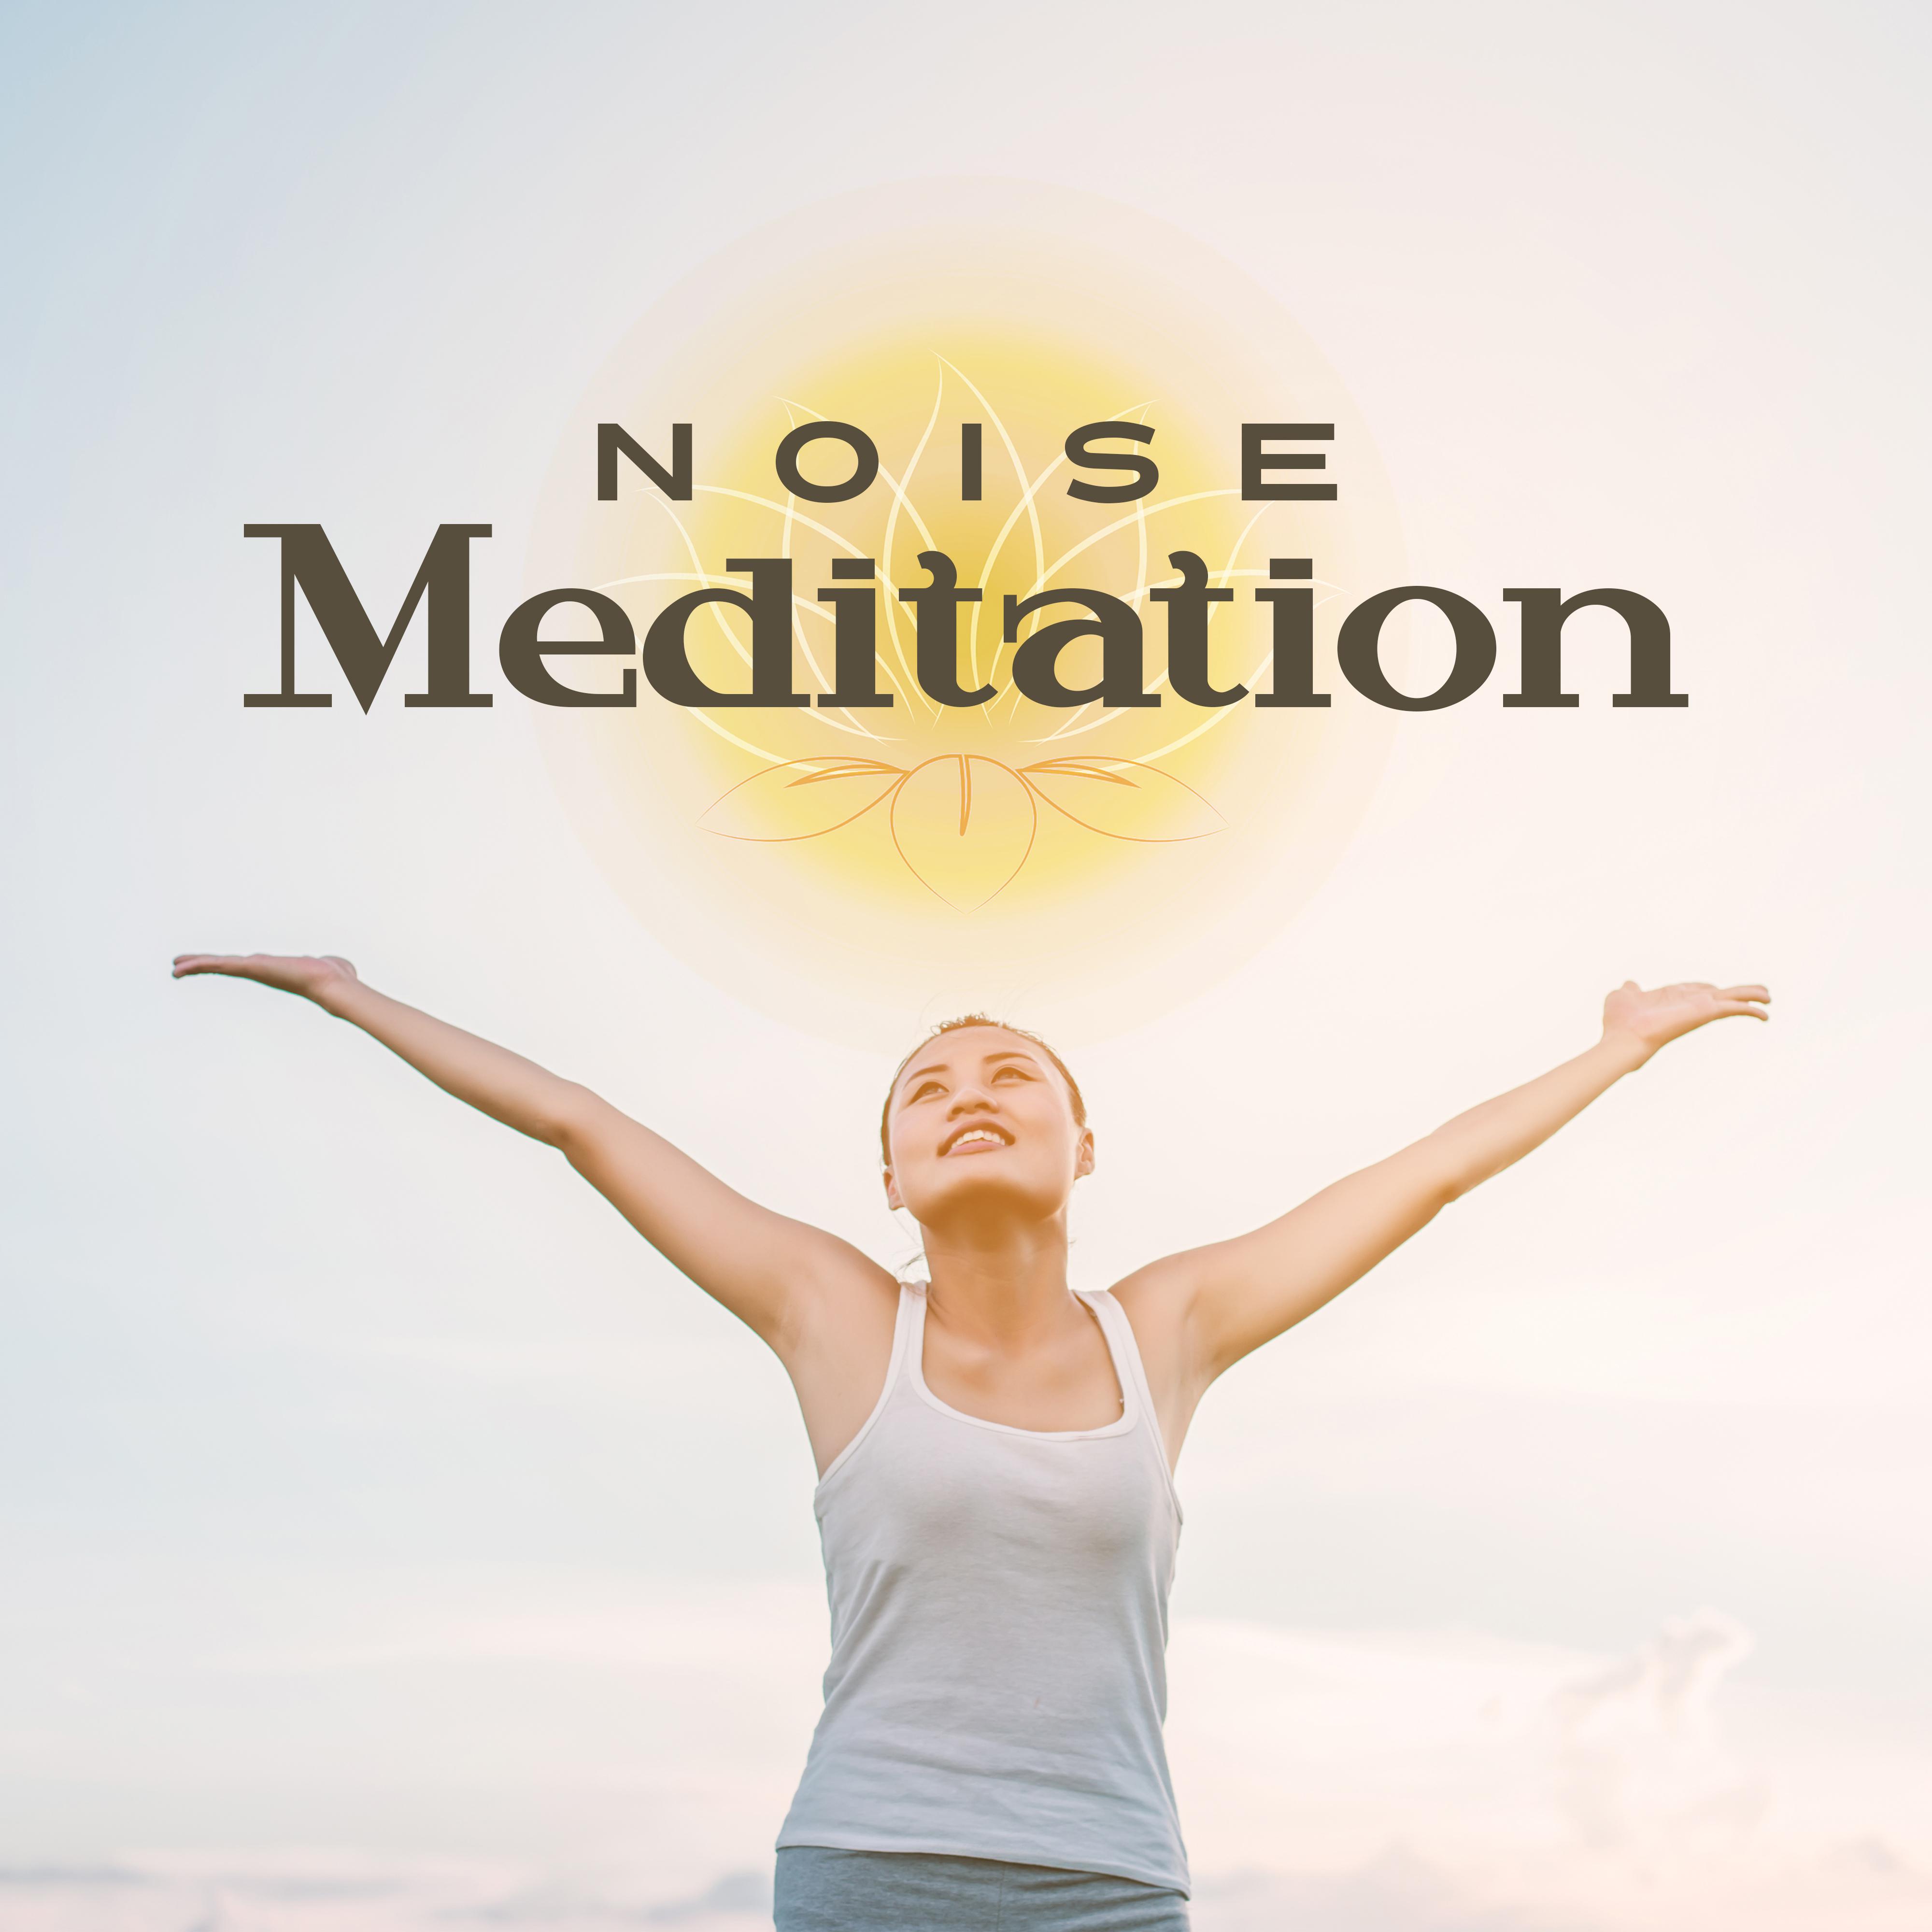 Noise Meditation